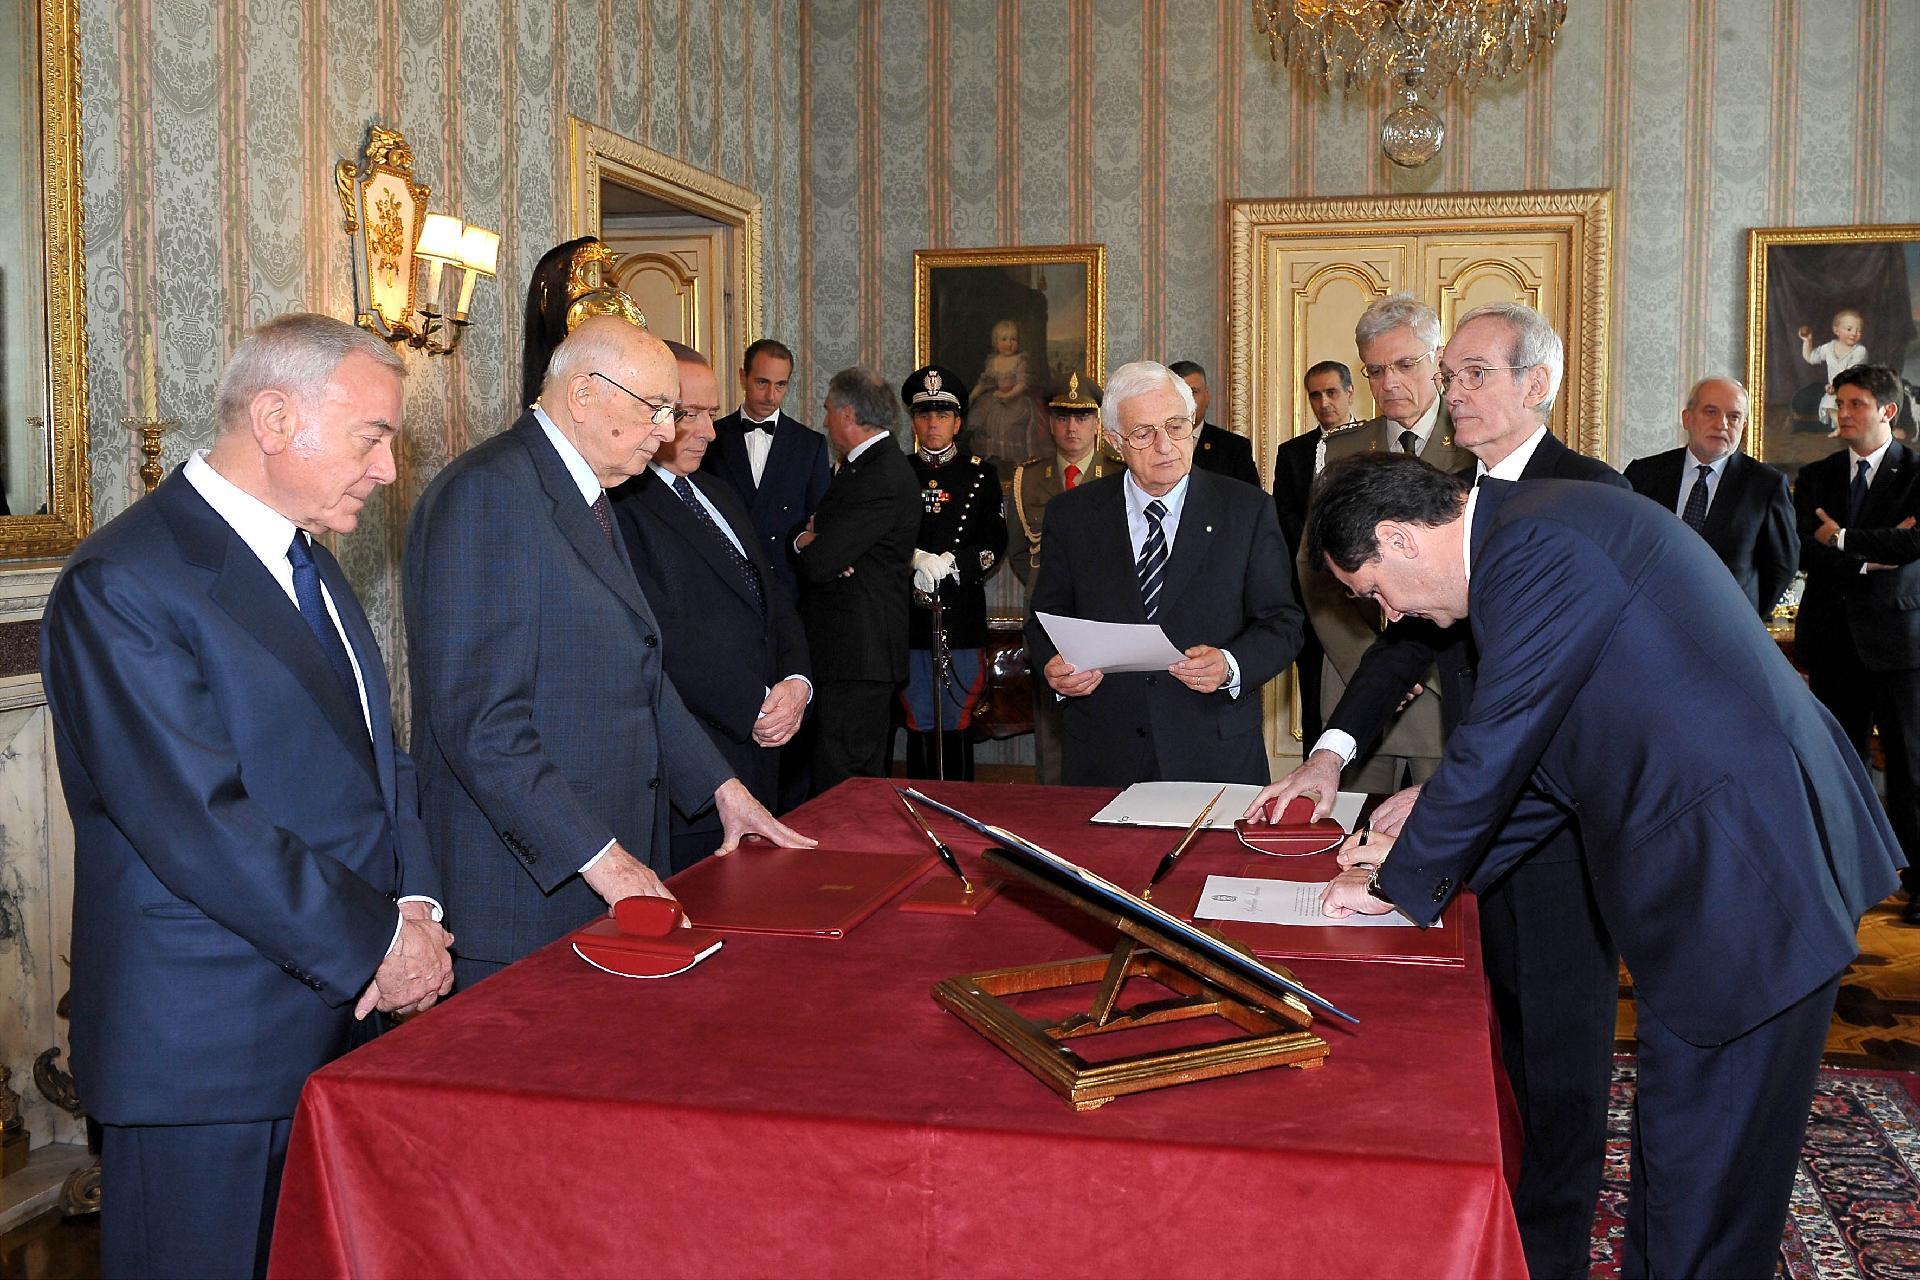 Il Presidente Giorgio Napolitano nel corso della cerimonia di giuramento del nuovo Ministro delle Politiche Agricole, Alimentari e Forestali, Francesco Saverio Romano